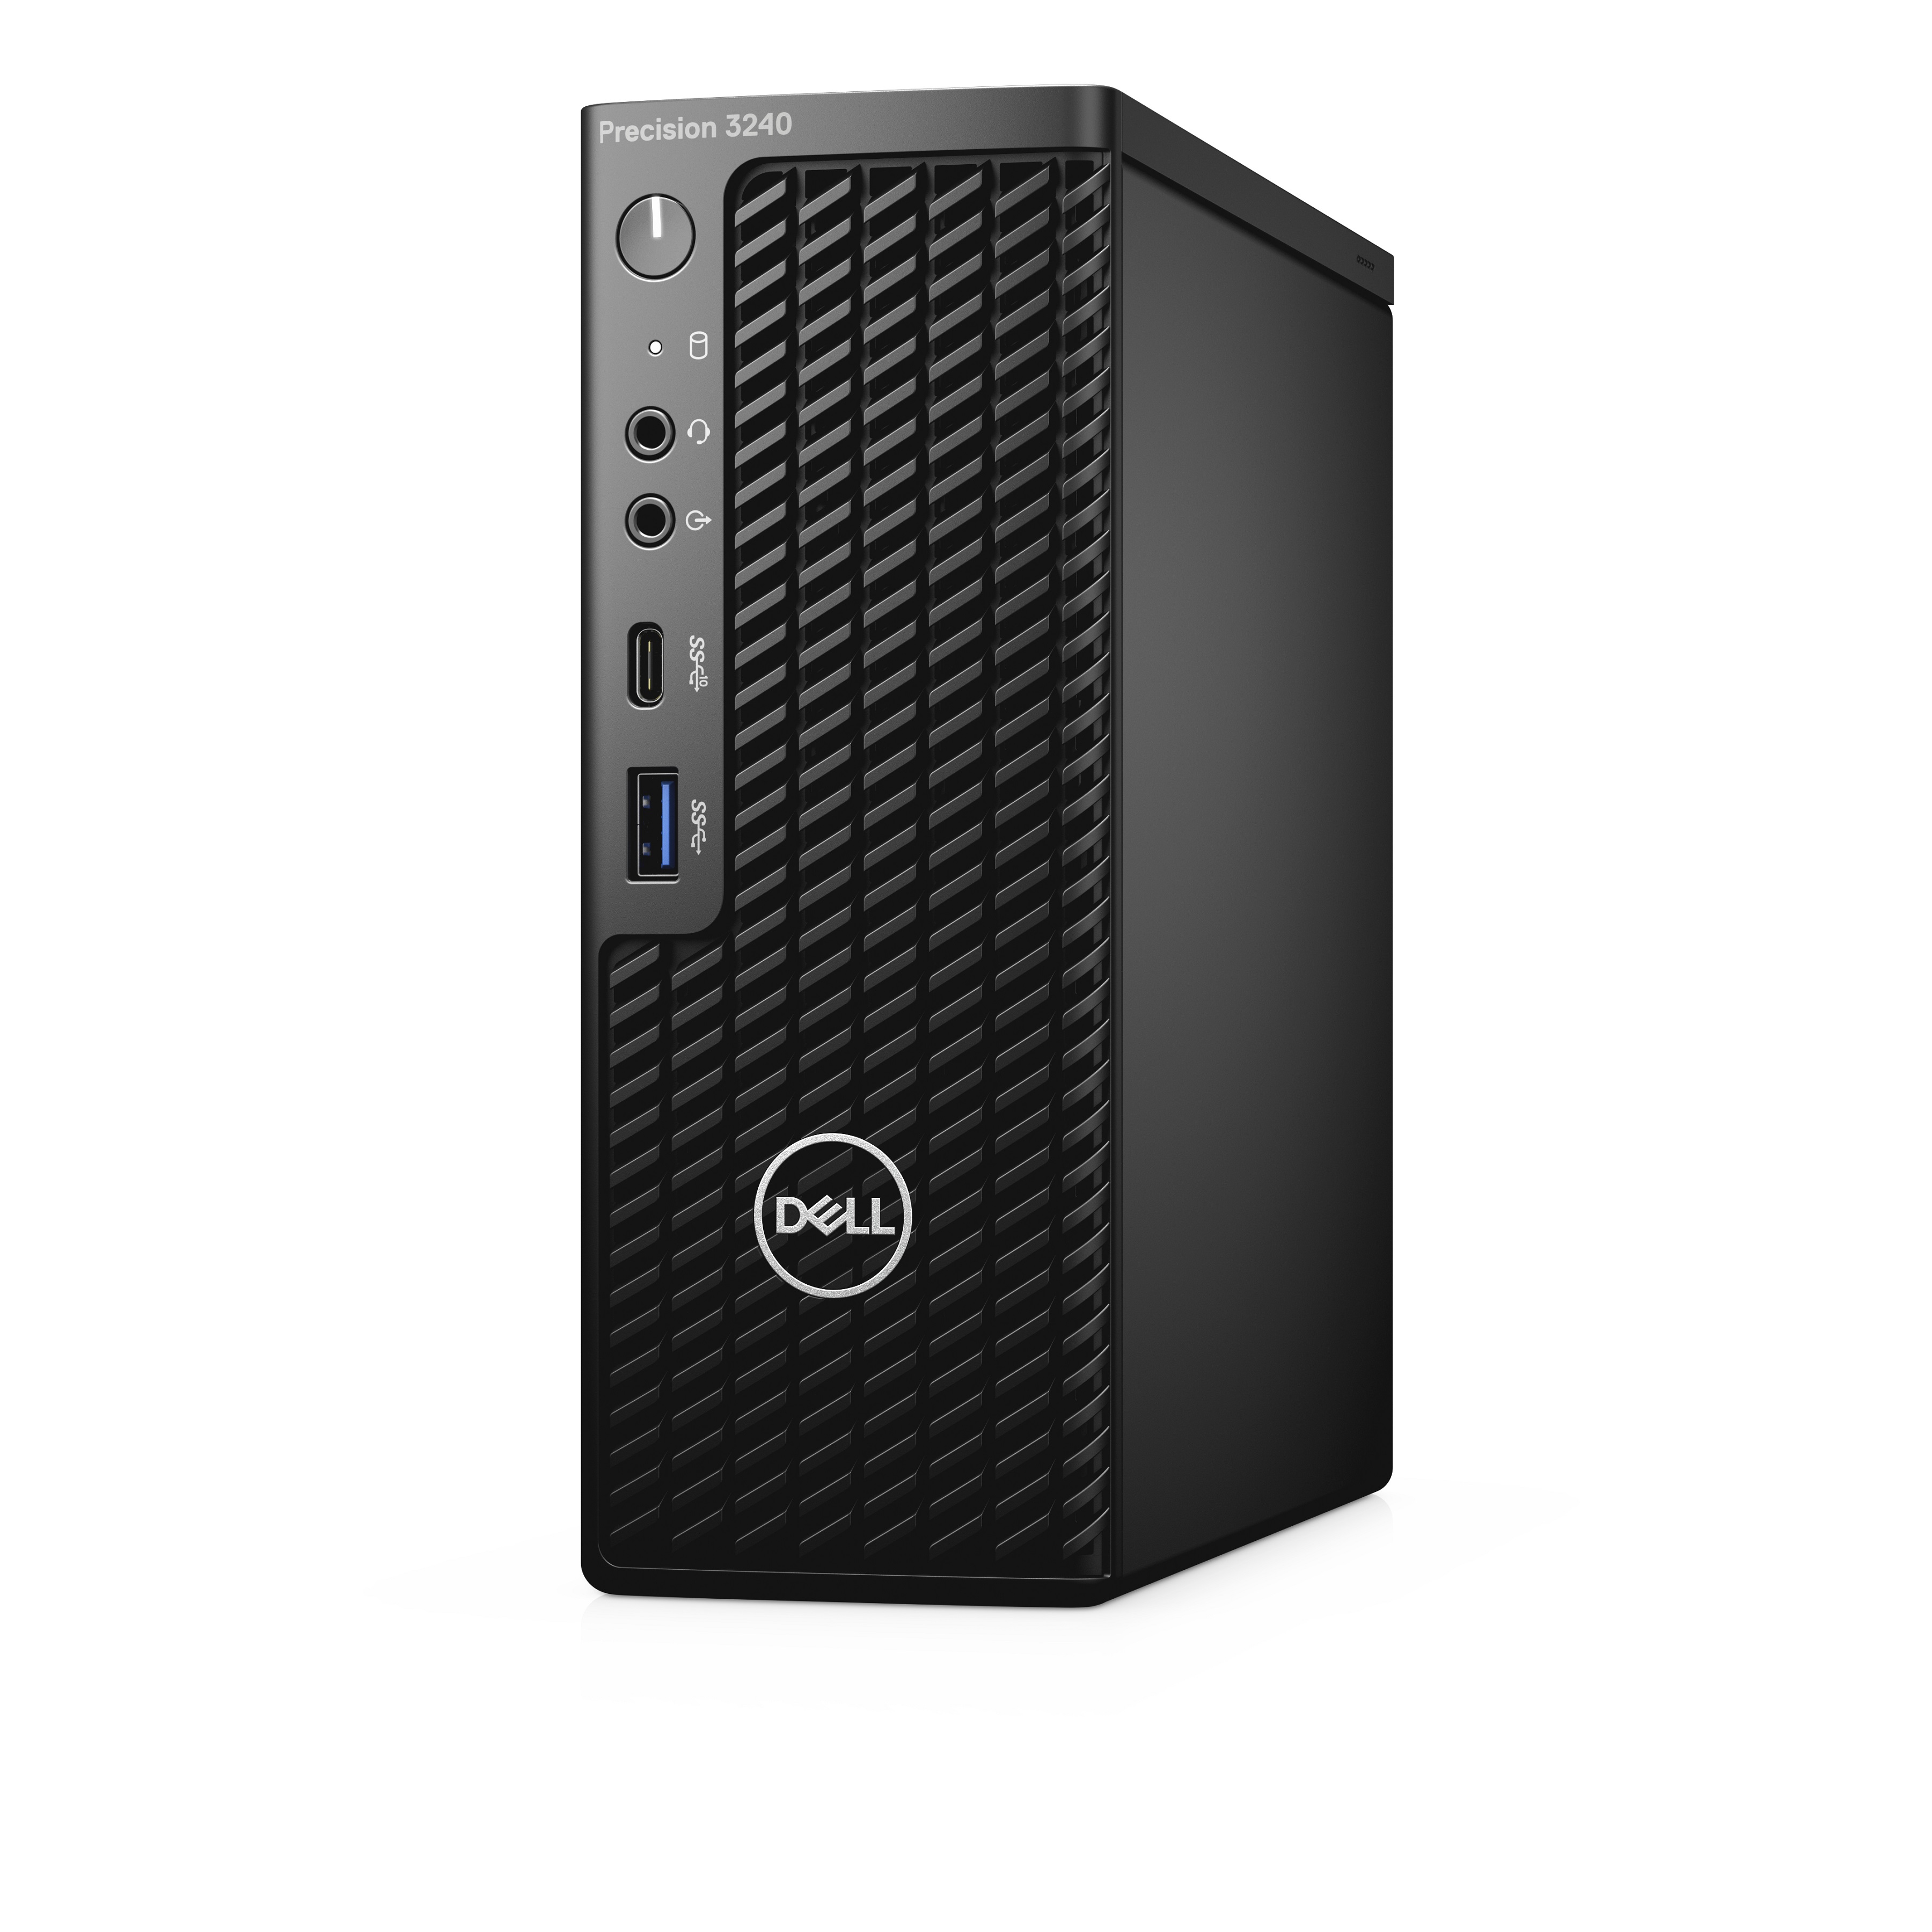 Dell Precision 3240 Compact USFF PC i7-10700 16G RAM 512GB SSD Quadro P620 Black